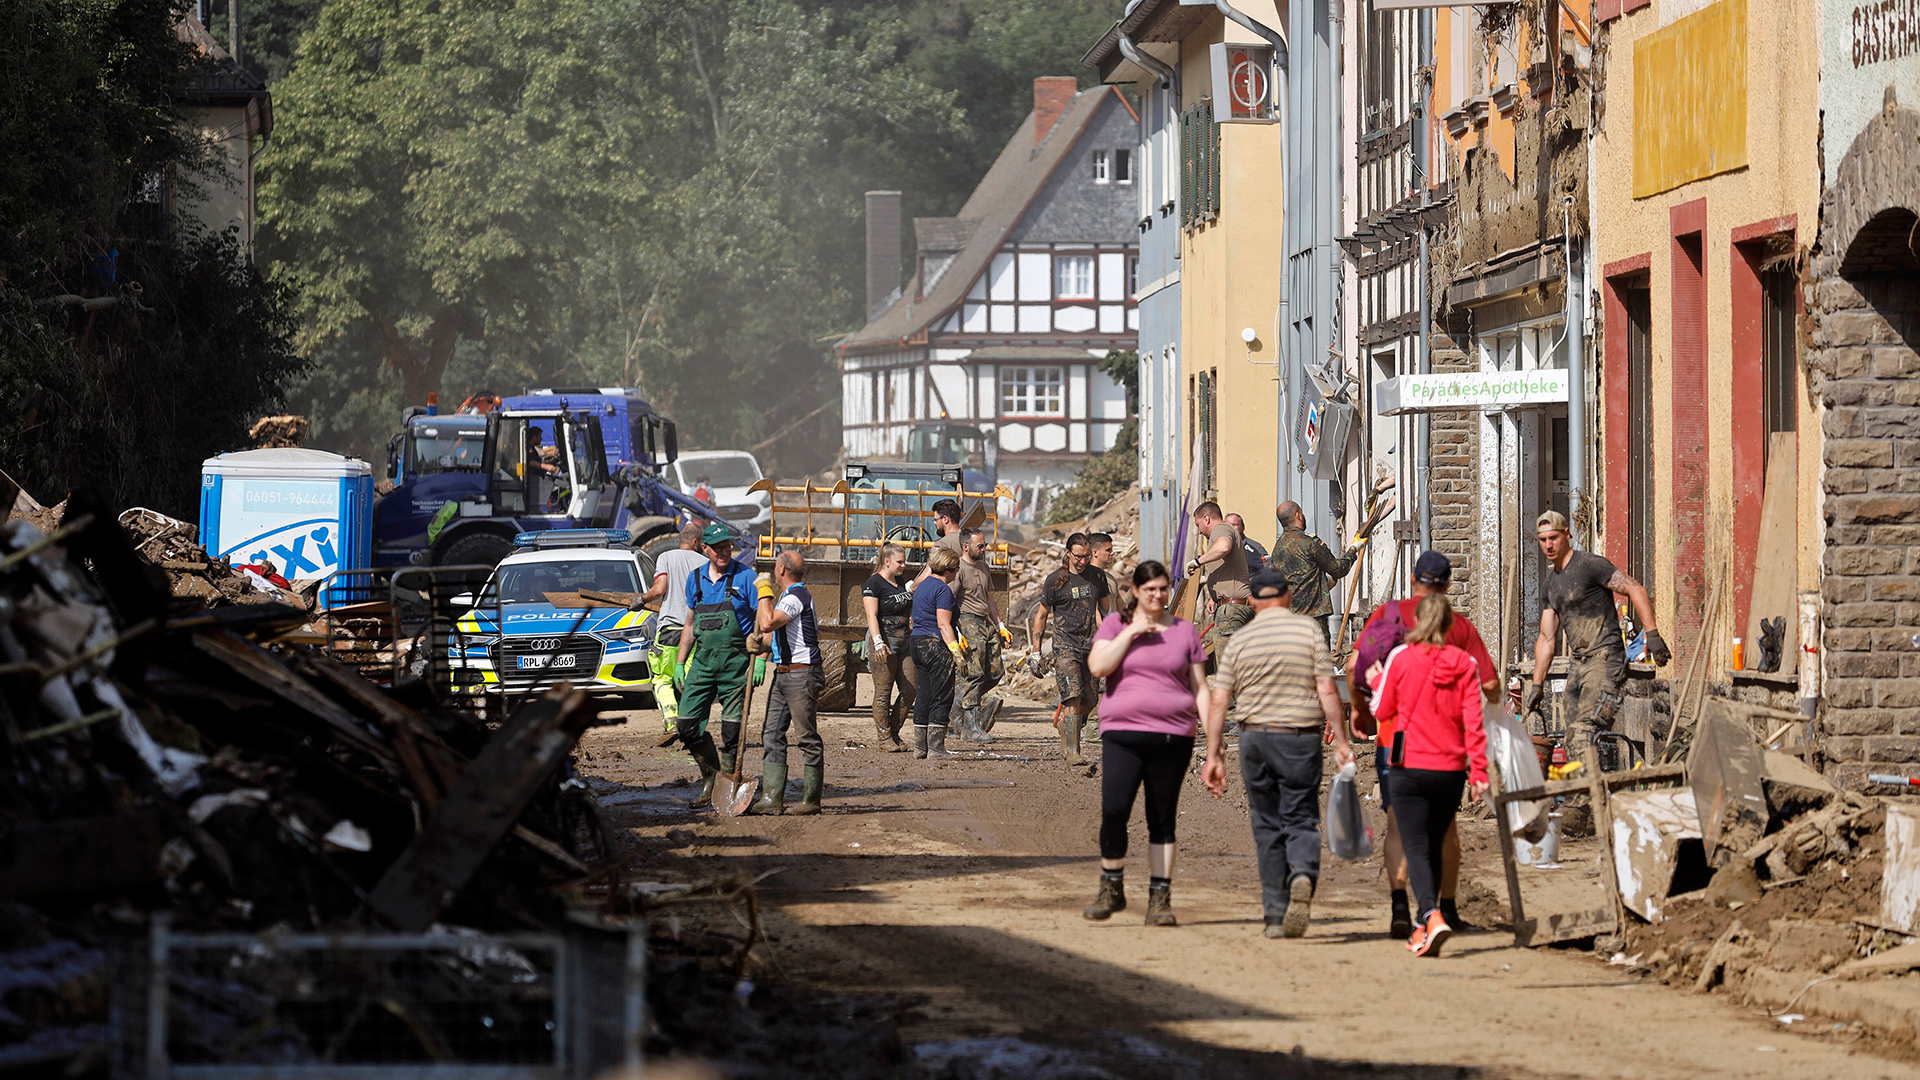 THW, Polizei und Passanten auf einer Straße mit Geröll und Schlamm. | picture alliance / Geisler-Fotop